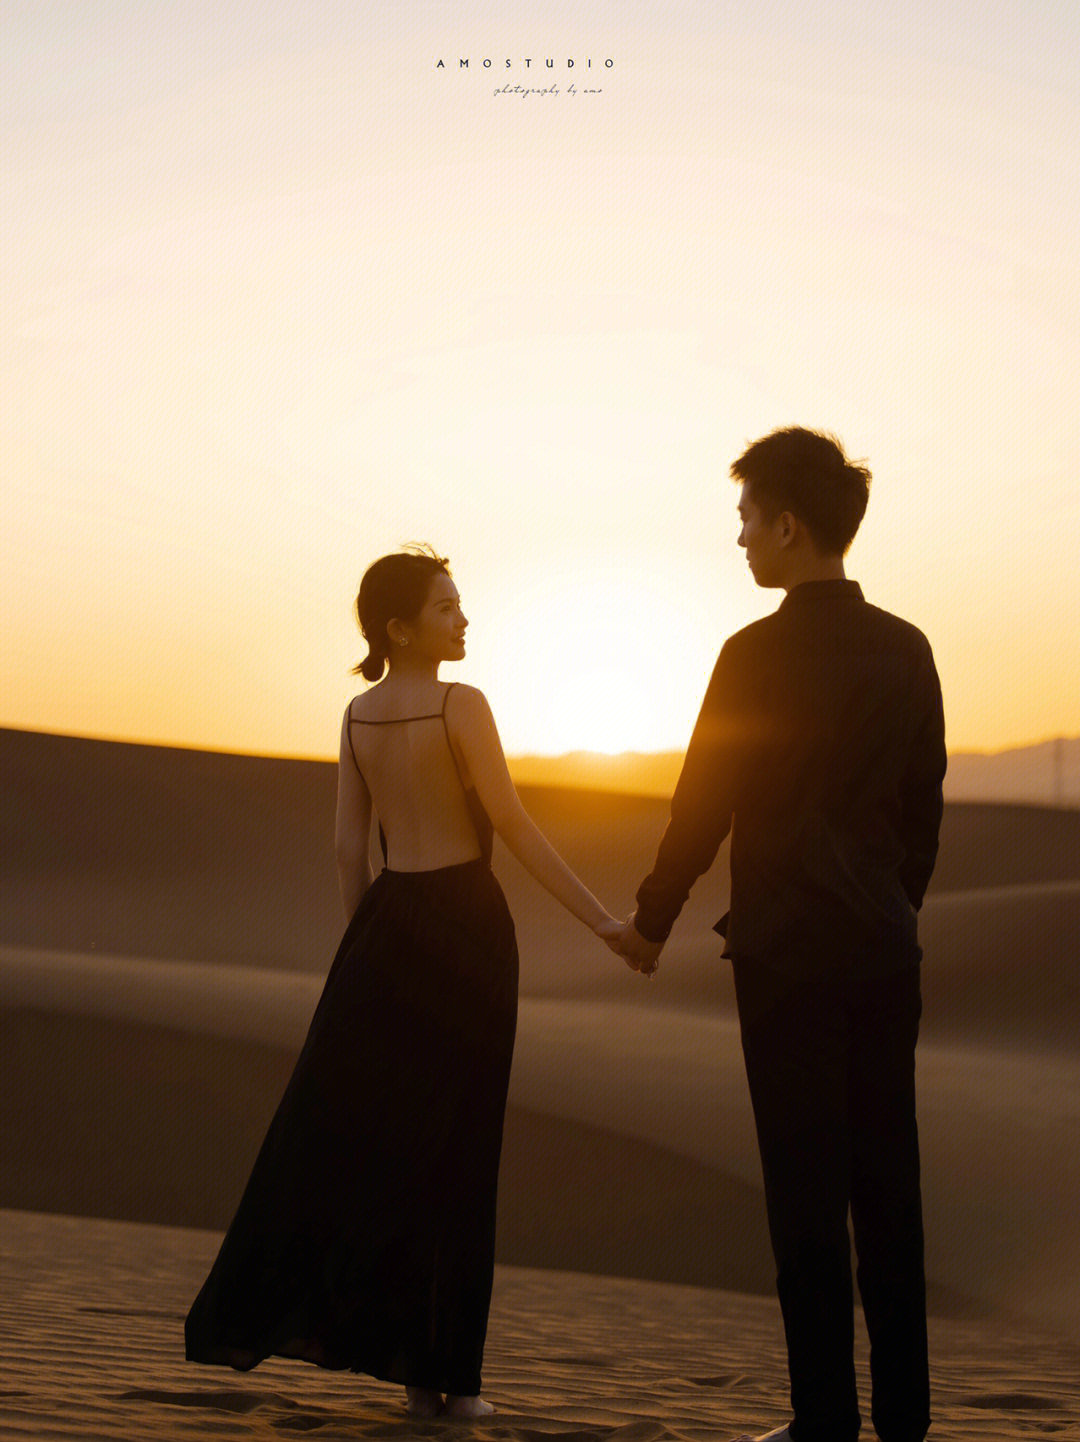 日落,黄沙,我们,构成了最美的风景,两个人无拘无束的奔跑,相拥,按下